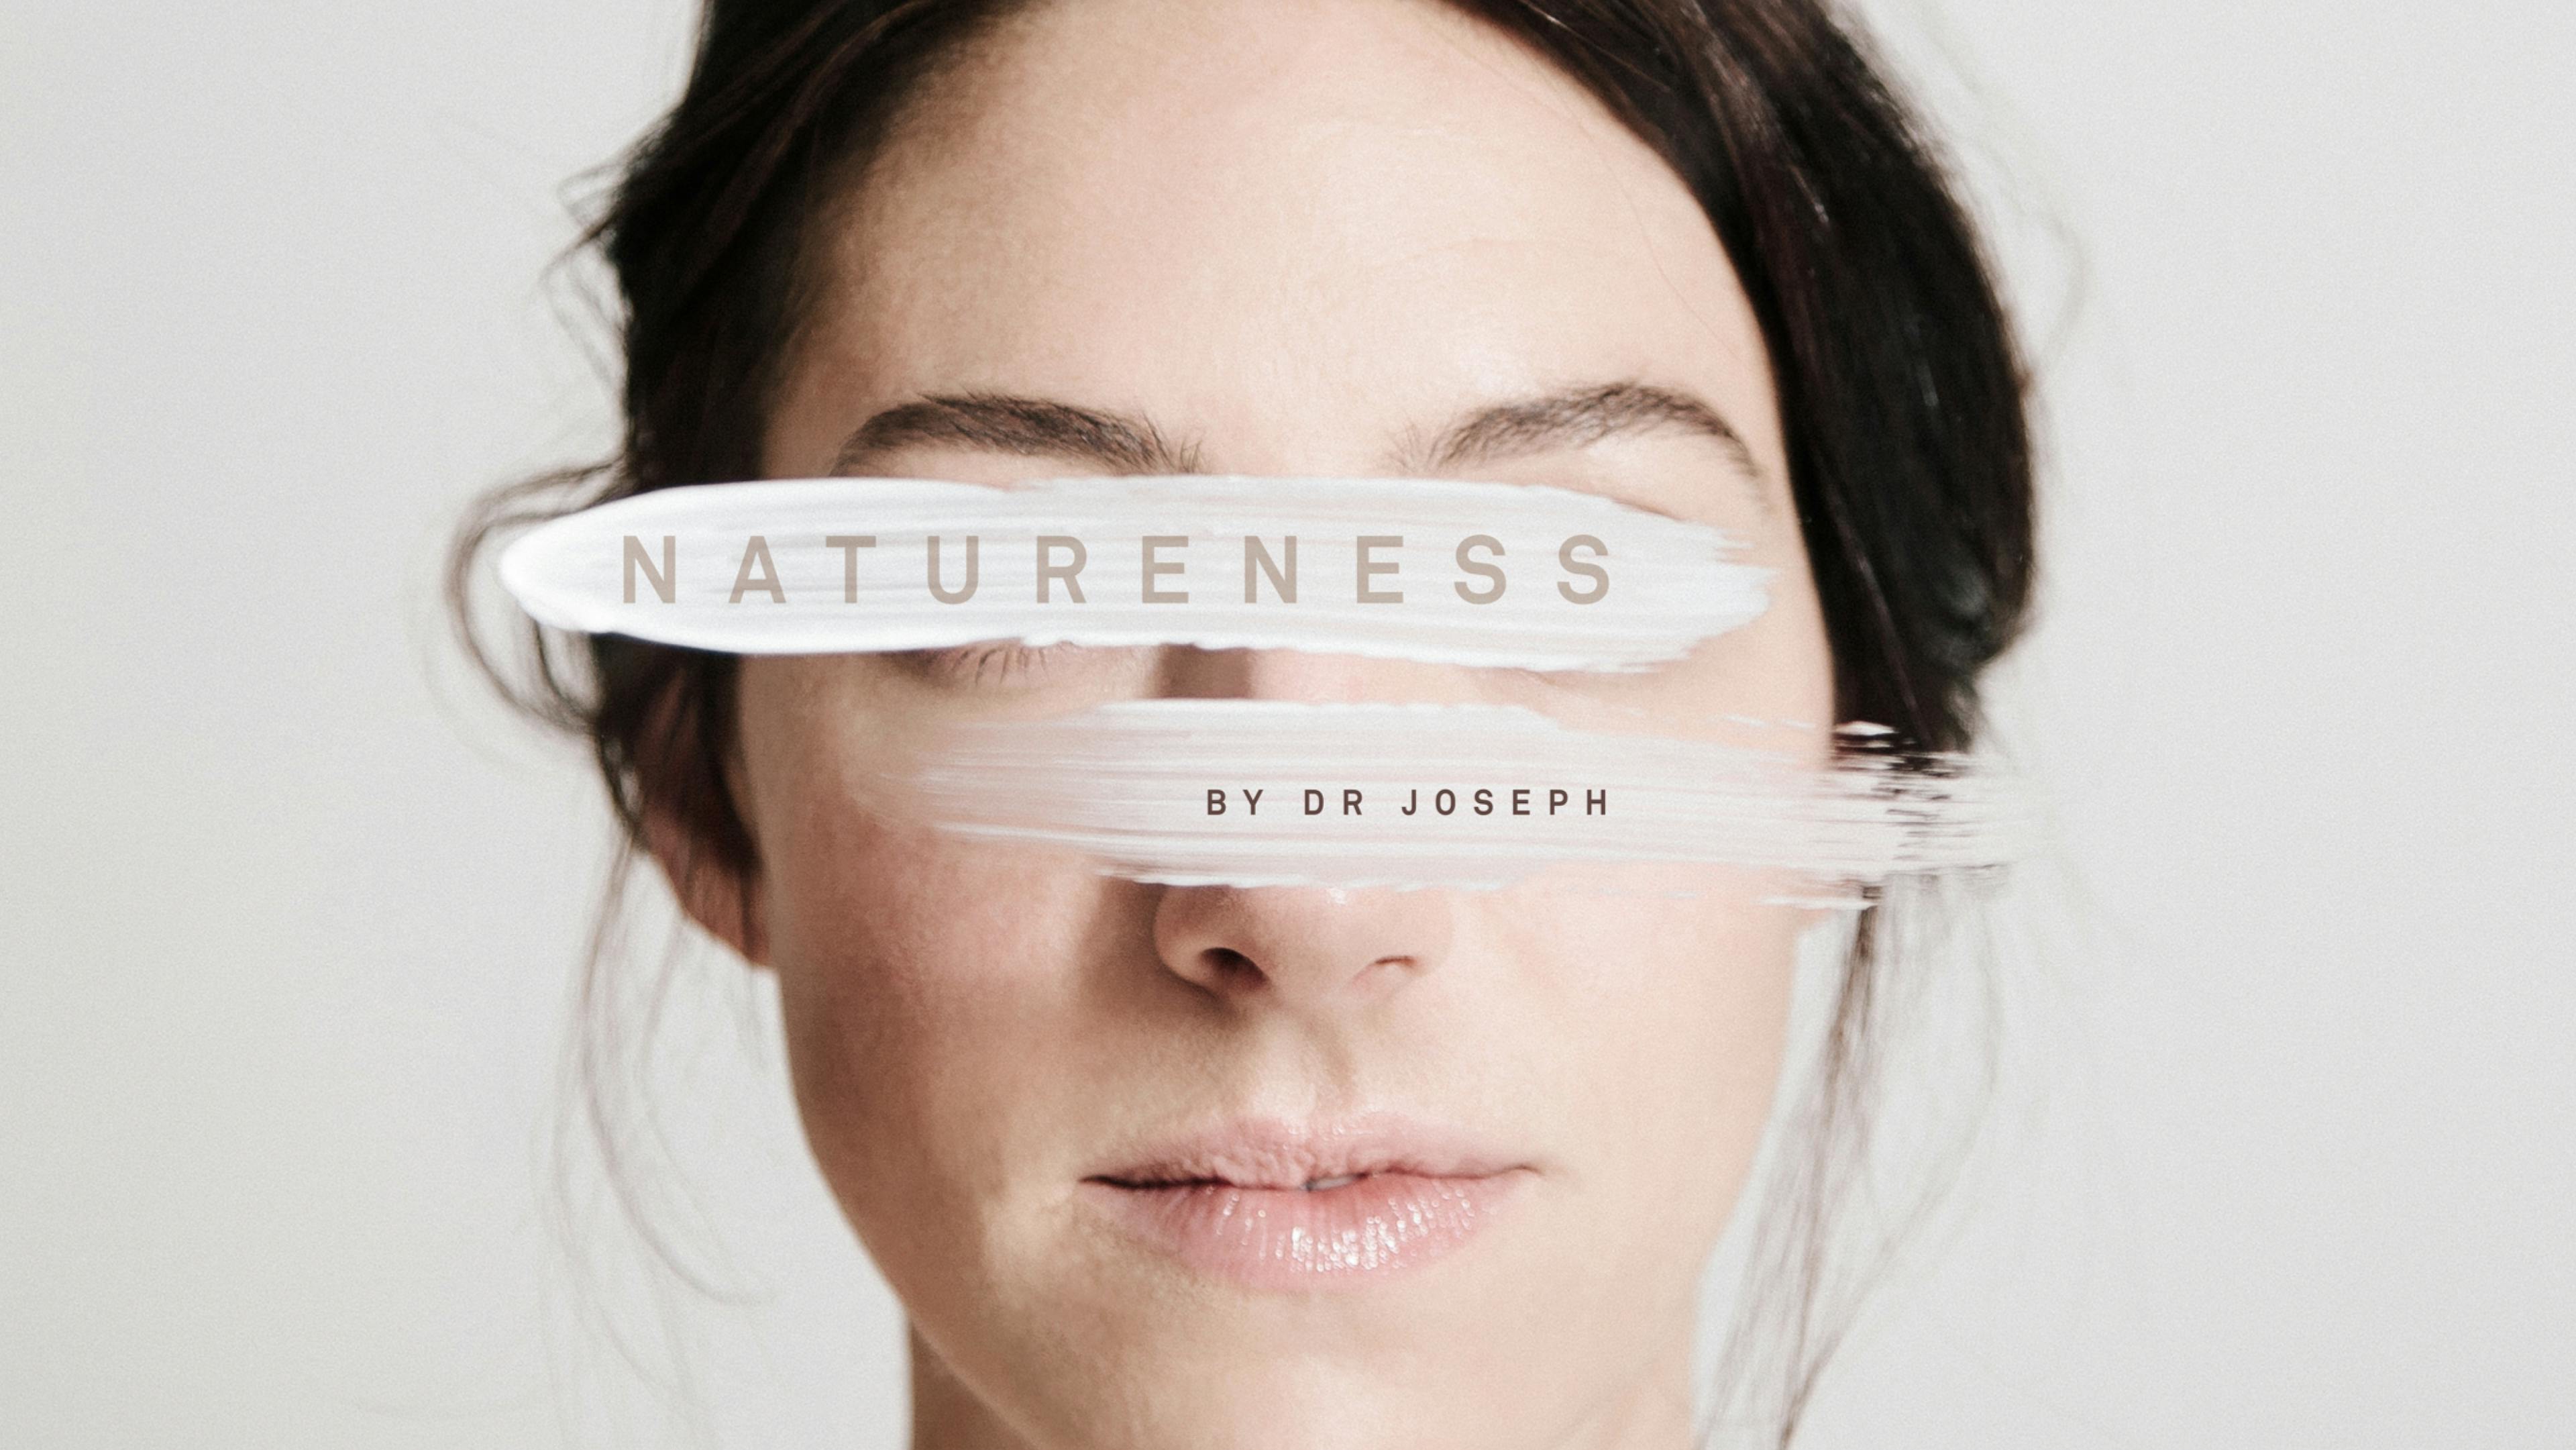 Gesicht einer Frau, darüber Pinselstriche einer Creme mit der Aufschrift: Natureness by Dr Joseph © gobiq